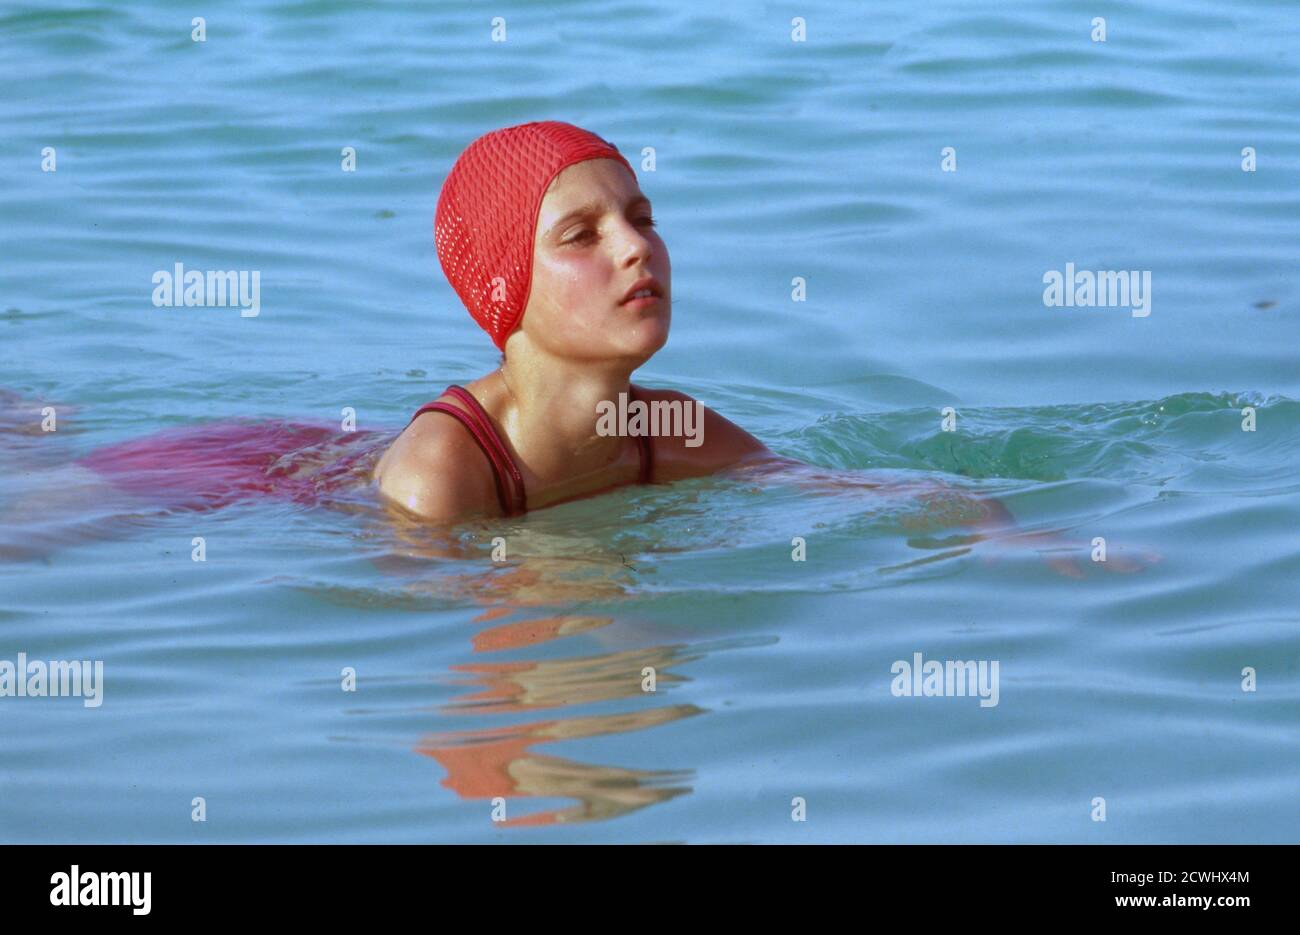 Diese Drombuschs, Fernsehserie, Deutschland 1983 - 1994, Dreharbeiten in Israel 1988, Darsteller: Adina Degen schwimmt im Toten Meer. Stock Photo